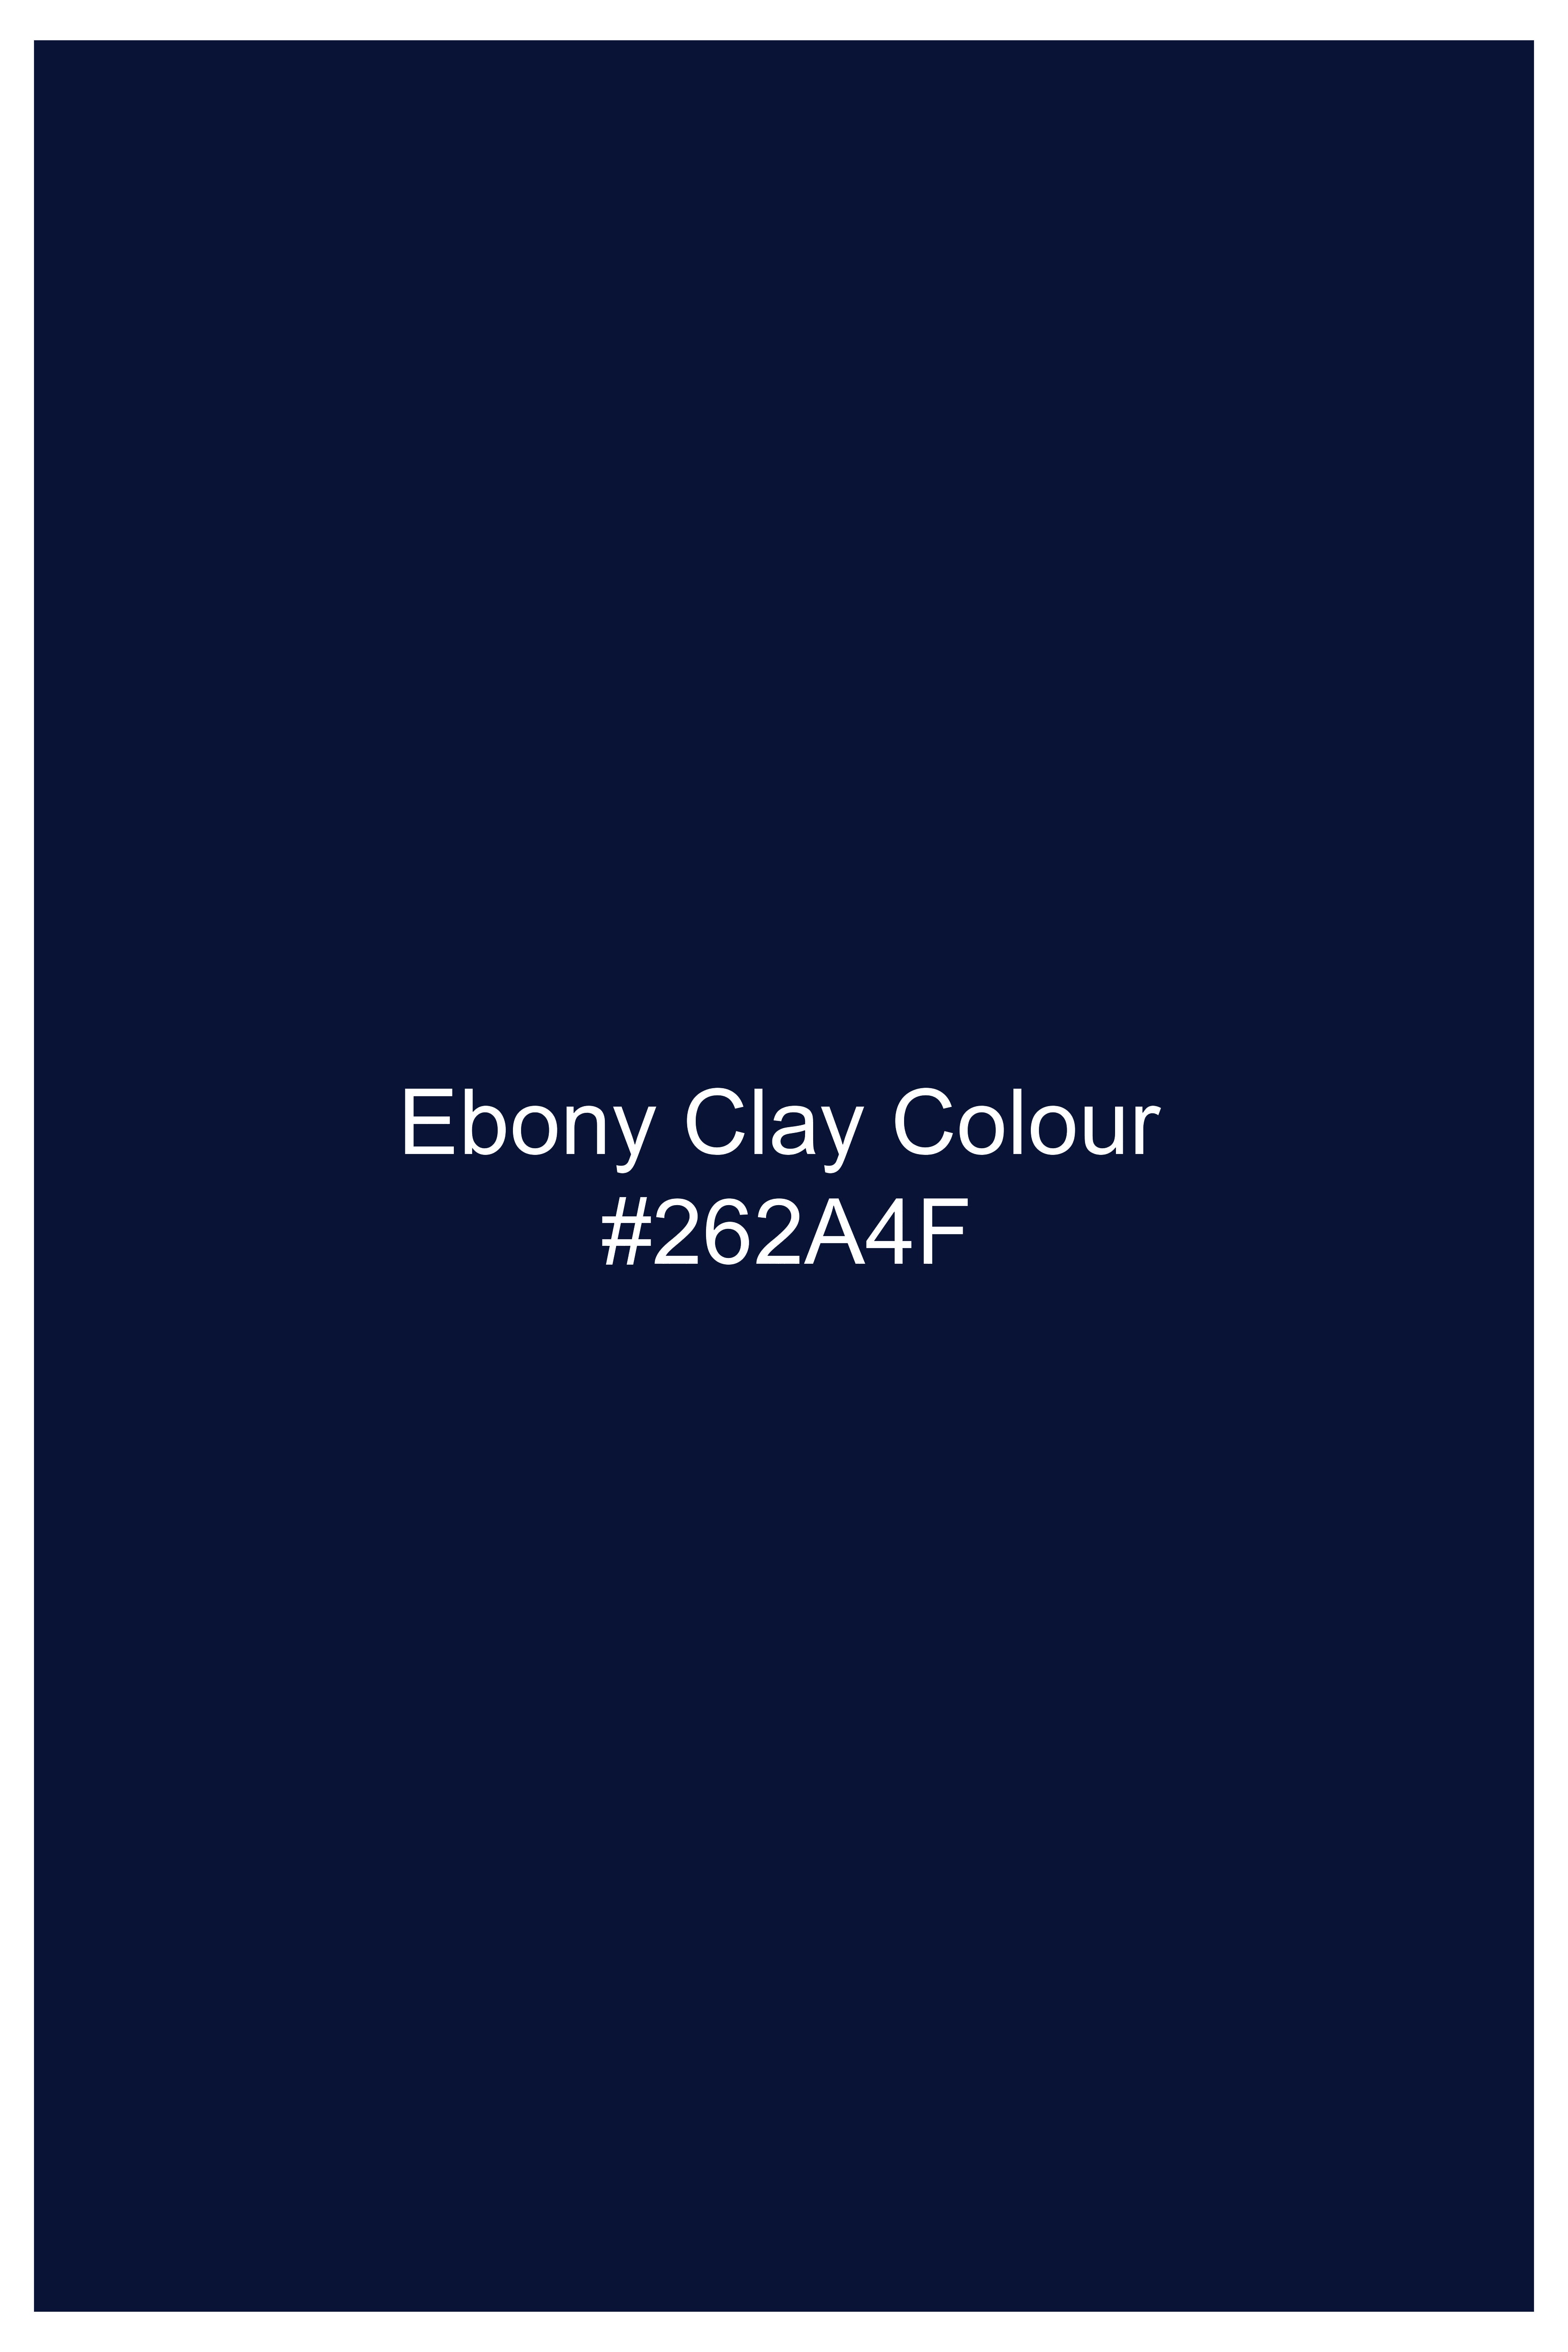 Ebony Clay Blue Wool Rich Designer Suit ST2761-D132-36,ST2761-D132-38,ST2761-D132-40,ST2761-D132-42,ST2761-D132-44,ST2761-D132-46,ST2761-D132-48,ST2761-D132-50,ST2761-D132-52,ST2761-D132-54,ST2761-D132-56,ST2761-D132-58,ST2761-D132-60